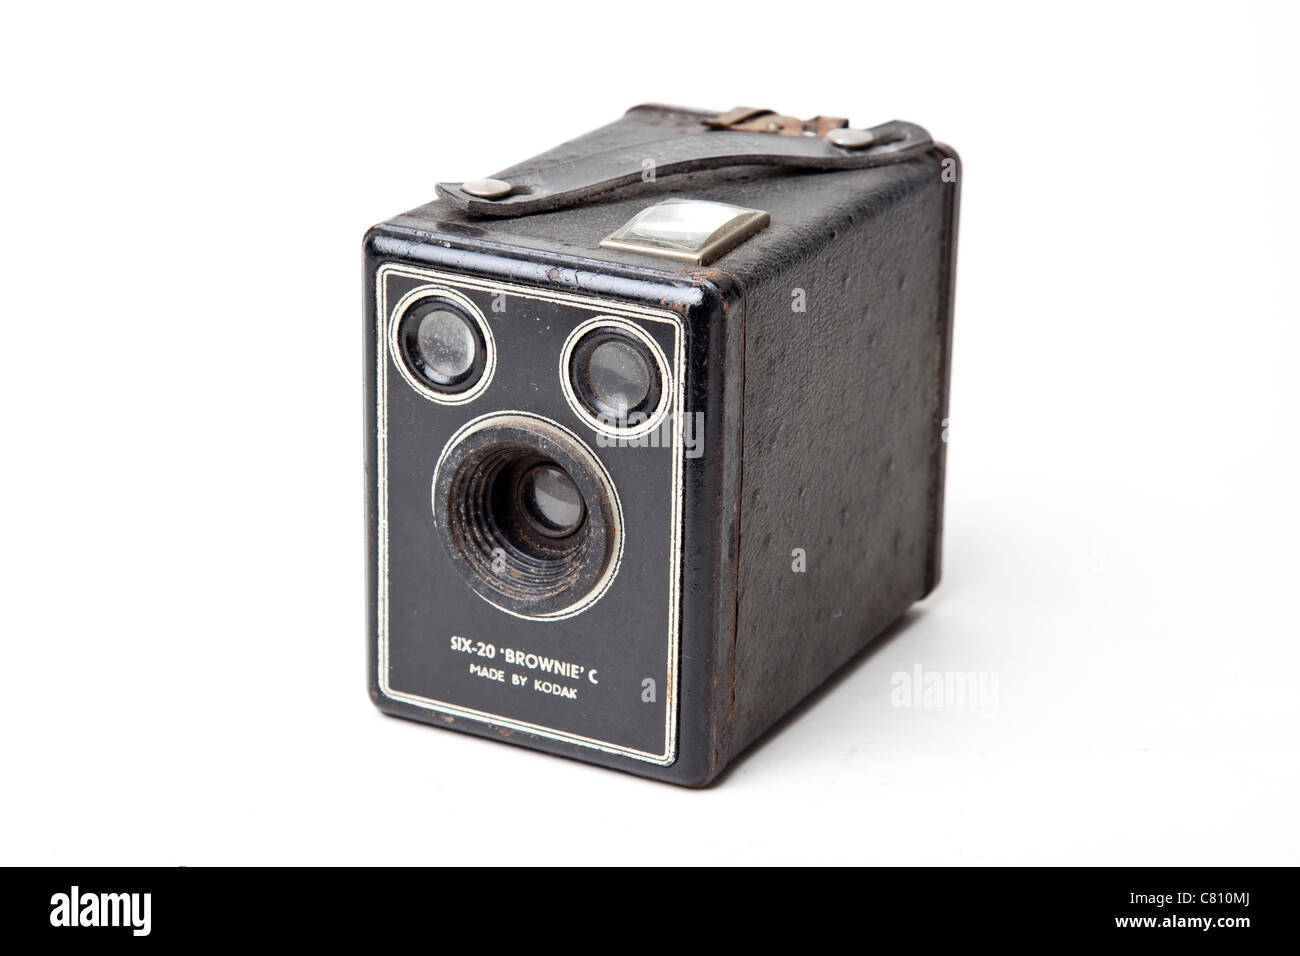 2 Caja de archivos Eastman Kodak 400 con bandejas de ranuras extraíbles almacenamiento de diapositivas vintage 